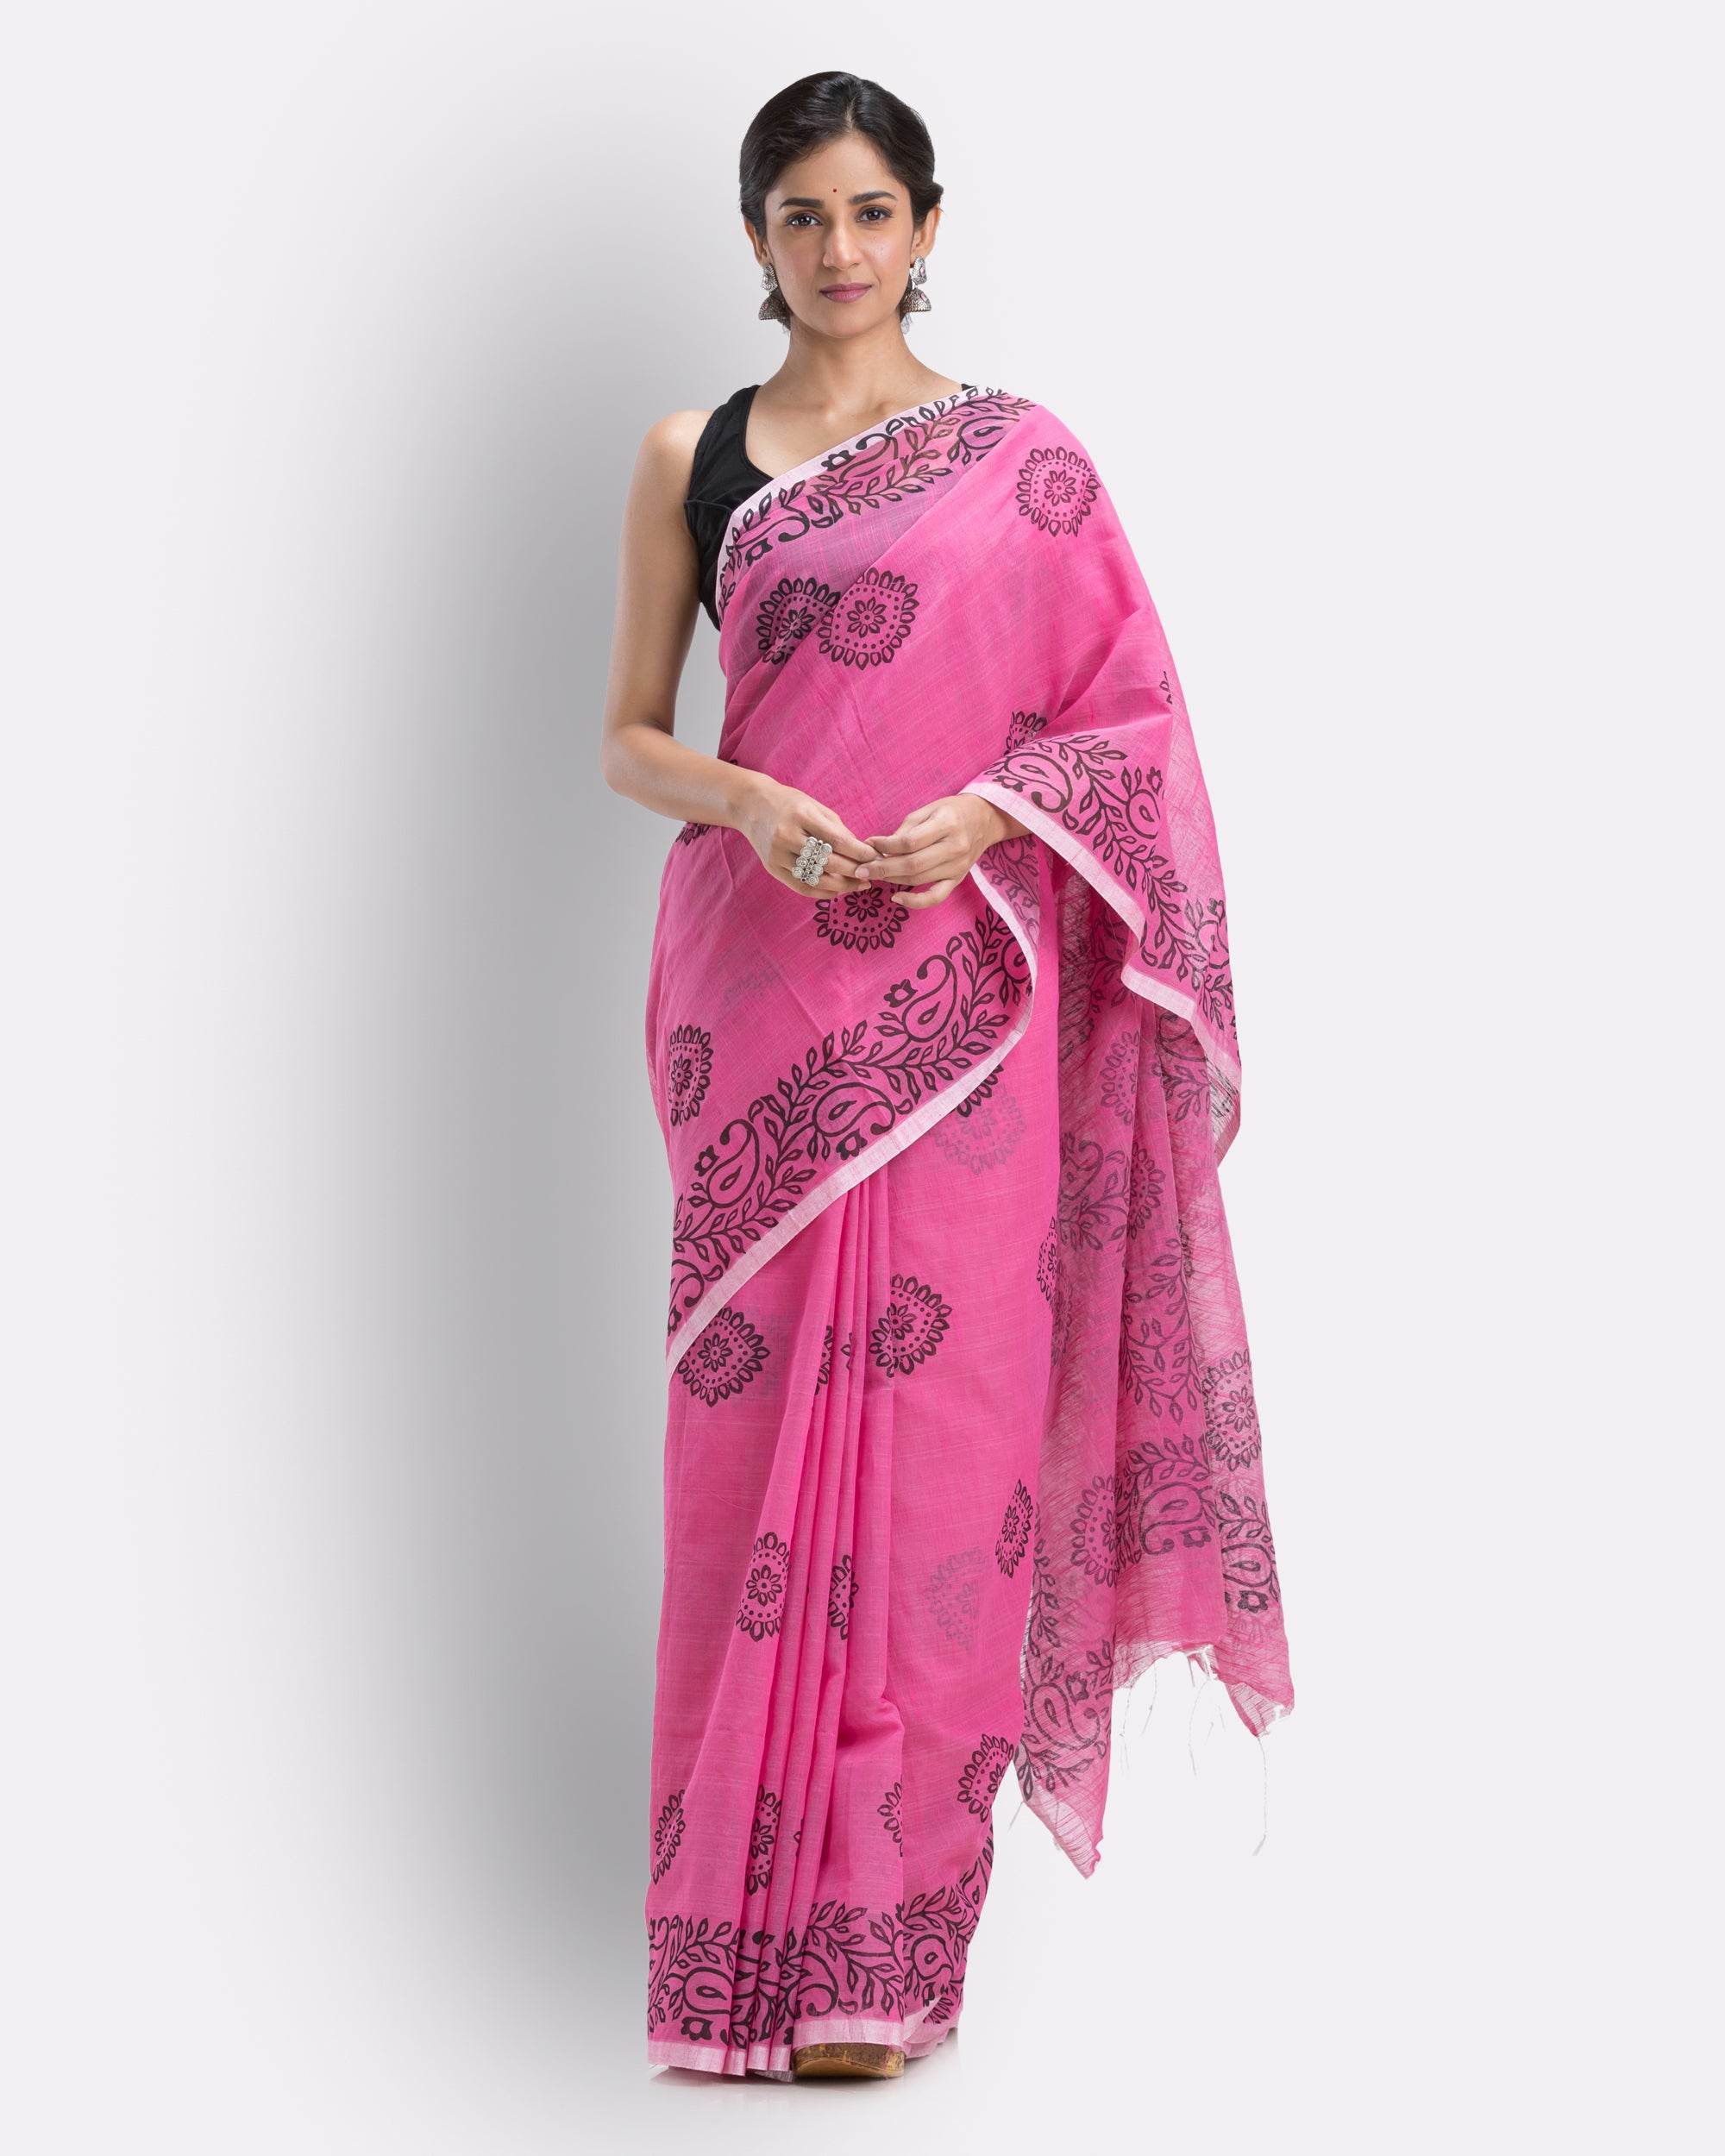 Women's Pink Cotton Blend Handloom Printed Saree - Piyari Fashion